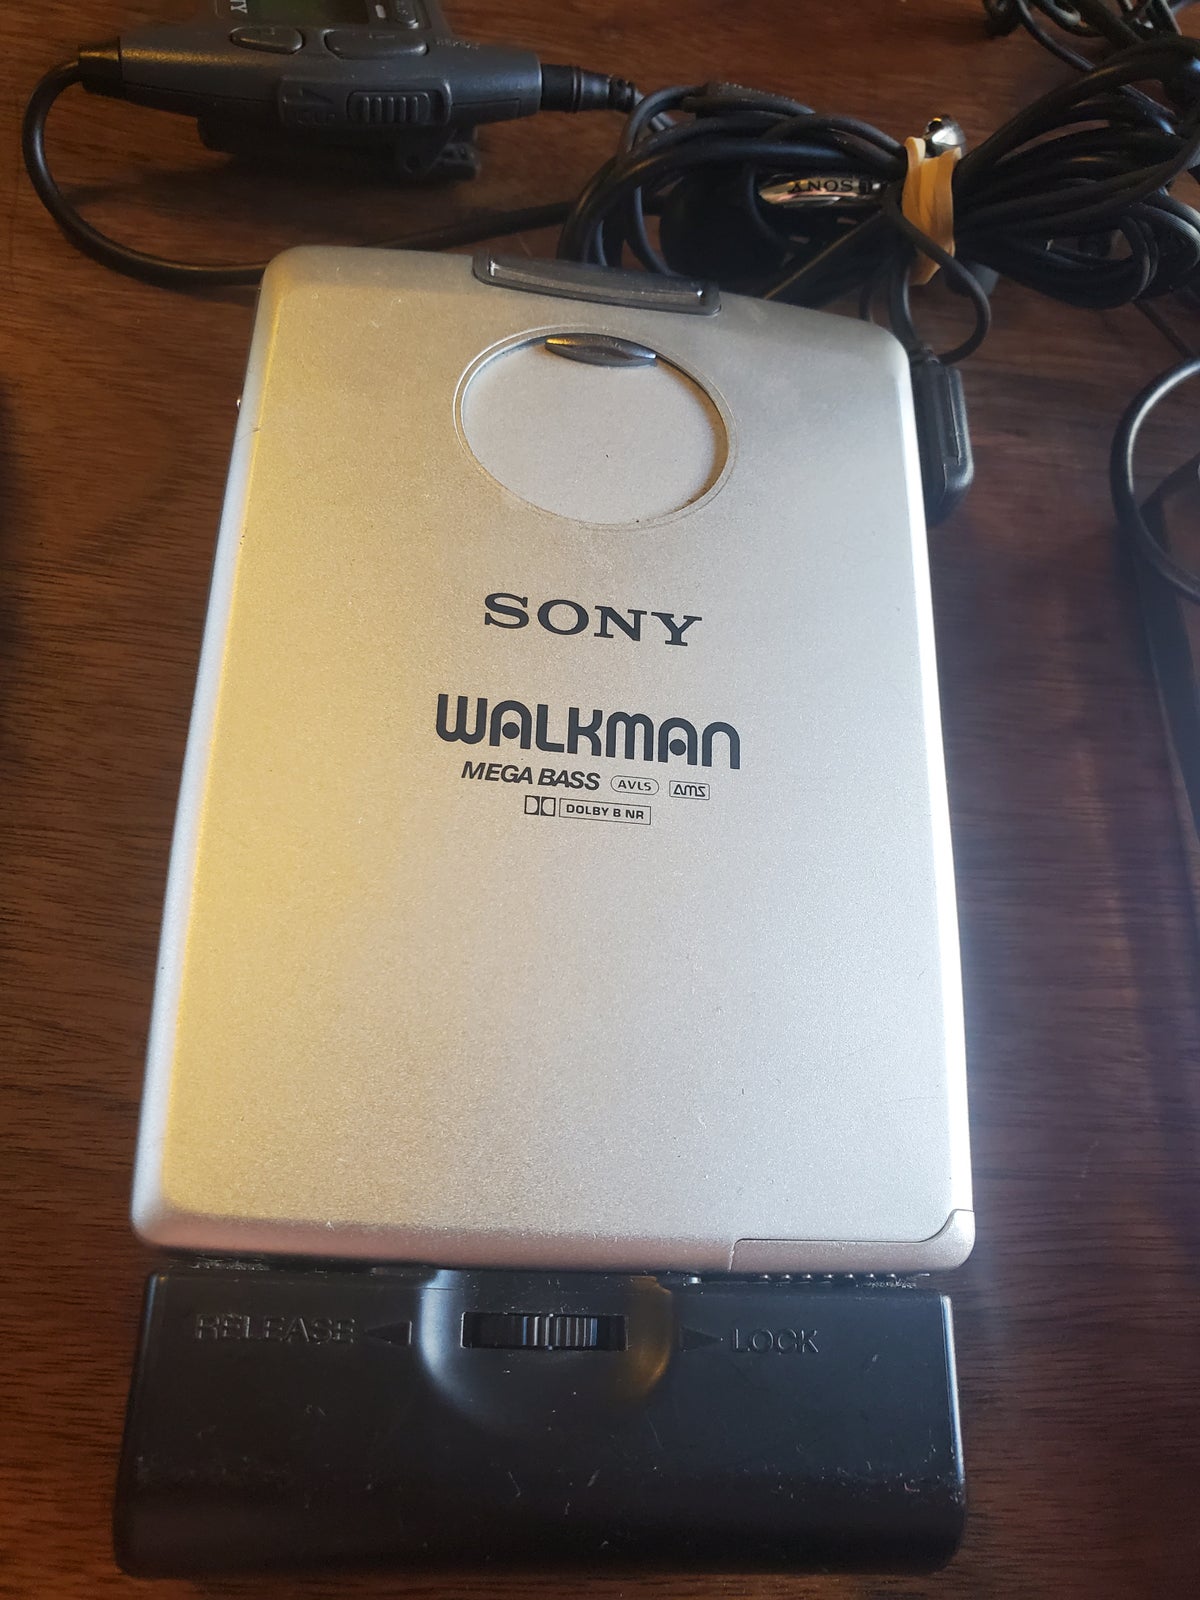 Walkman, Sony